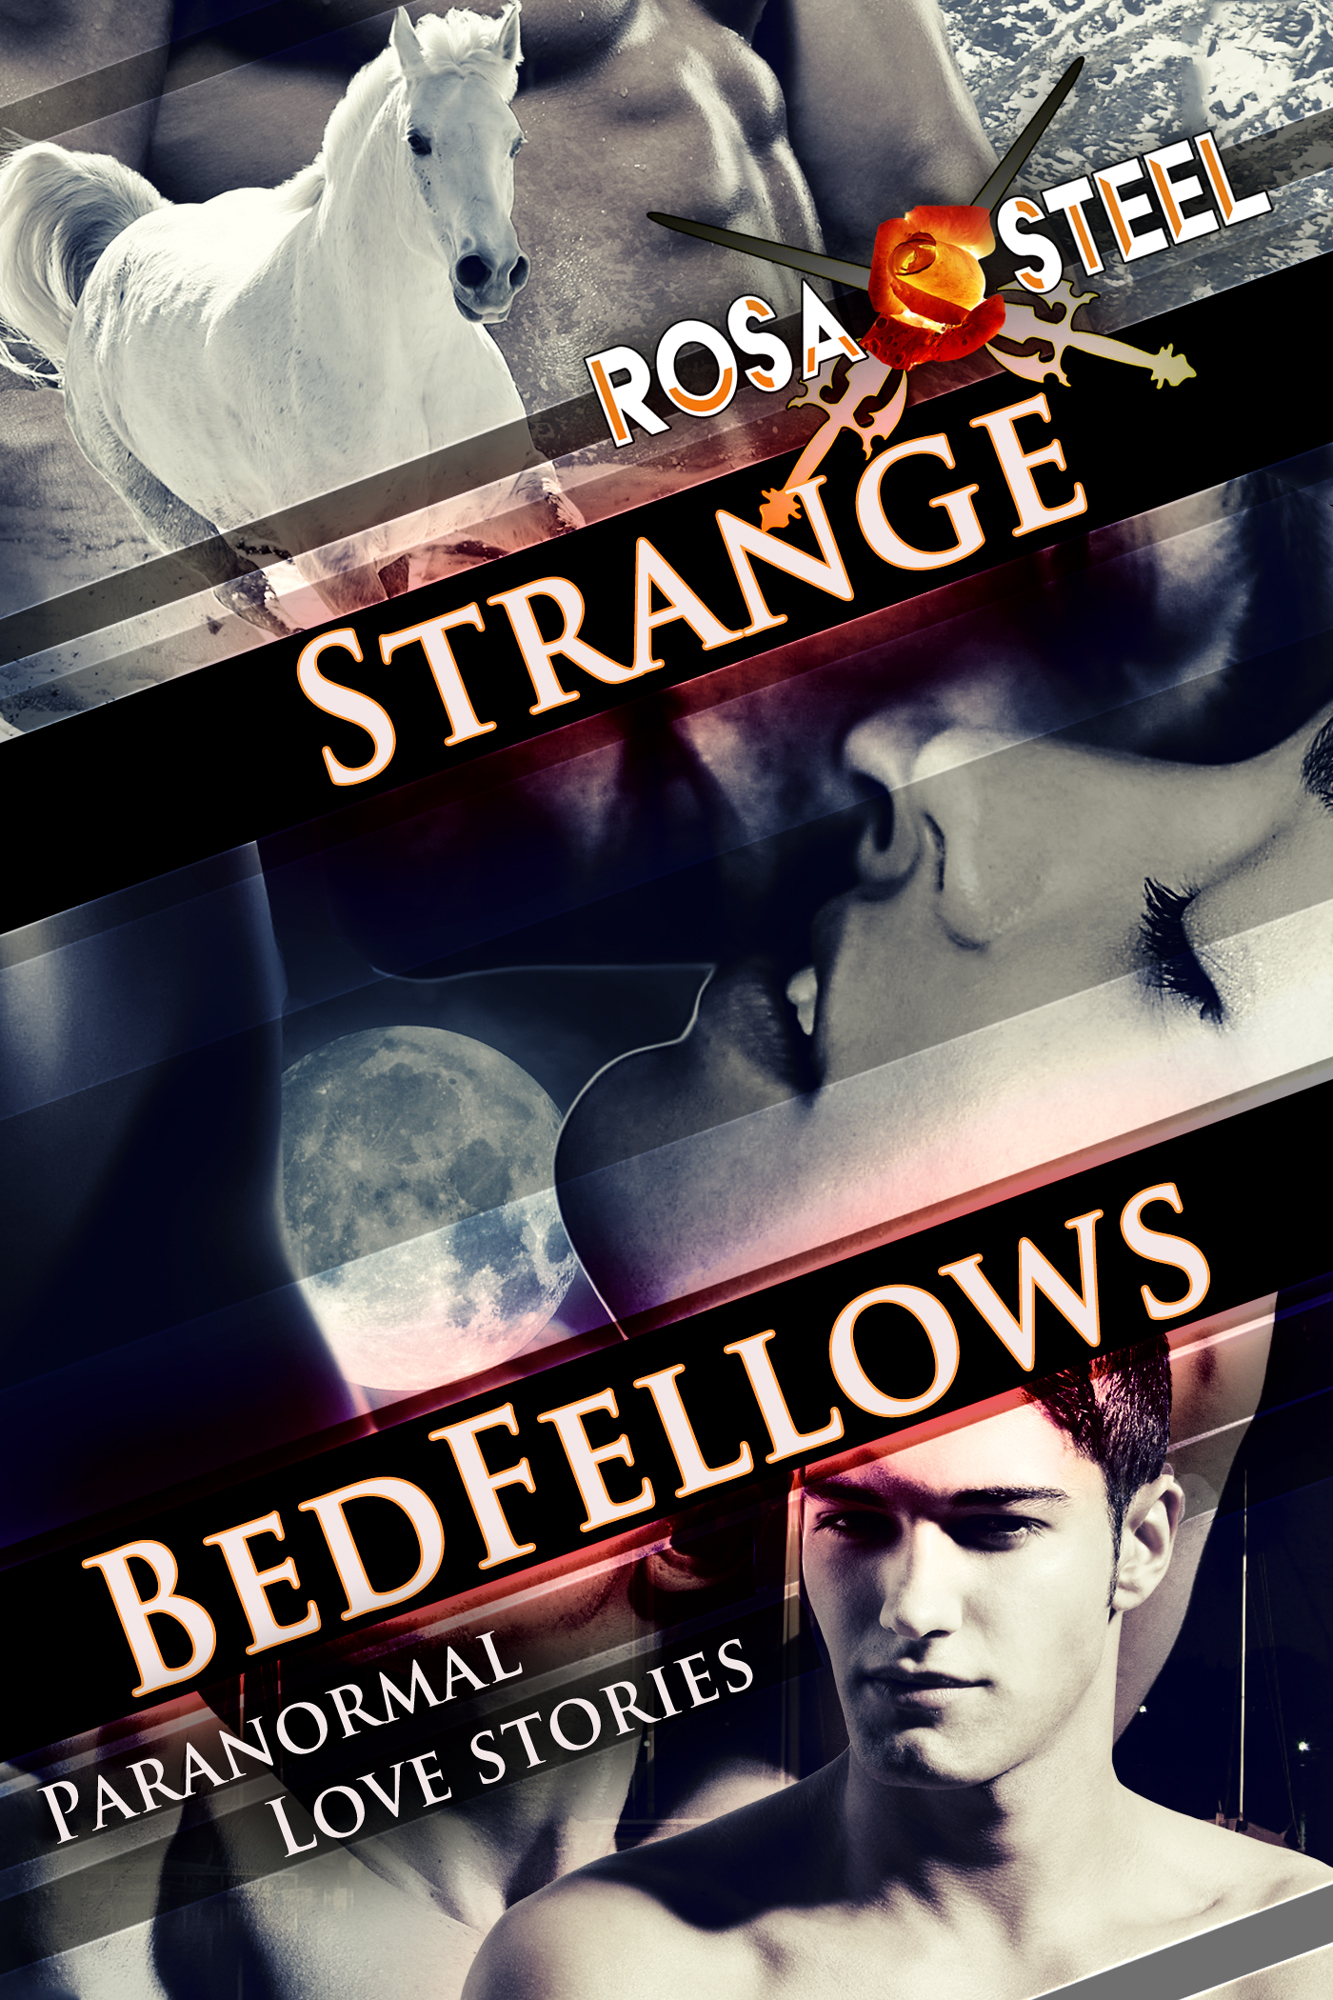 Strange bedfellows - a blood elf is  nsfw movie